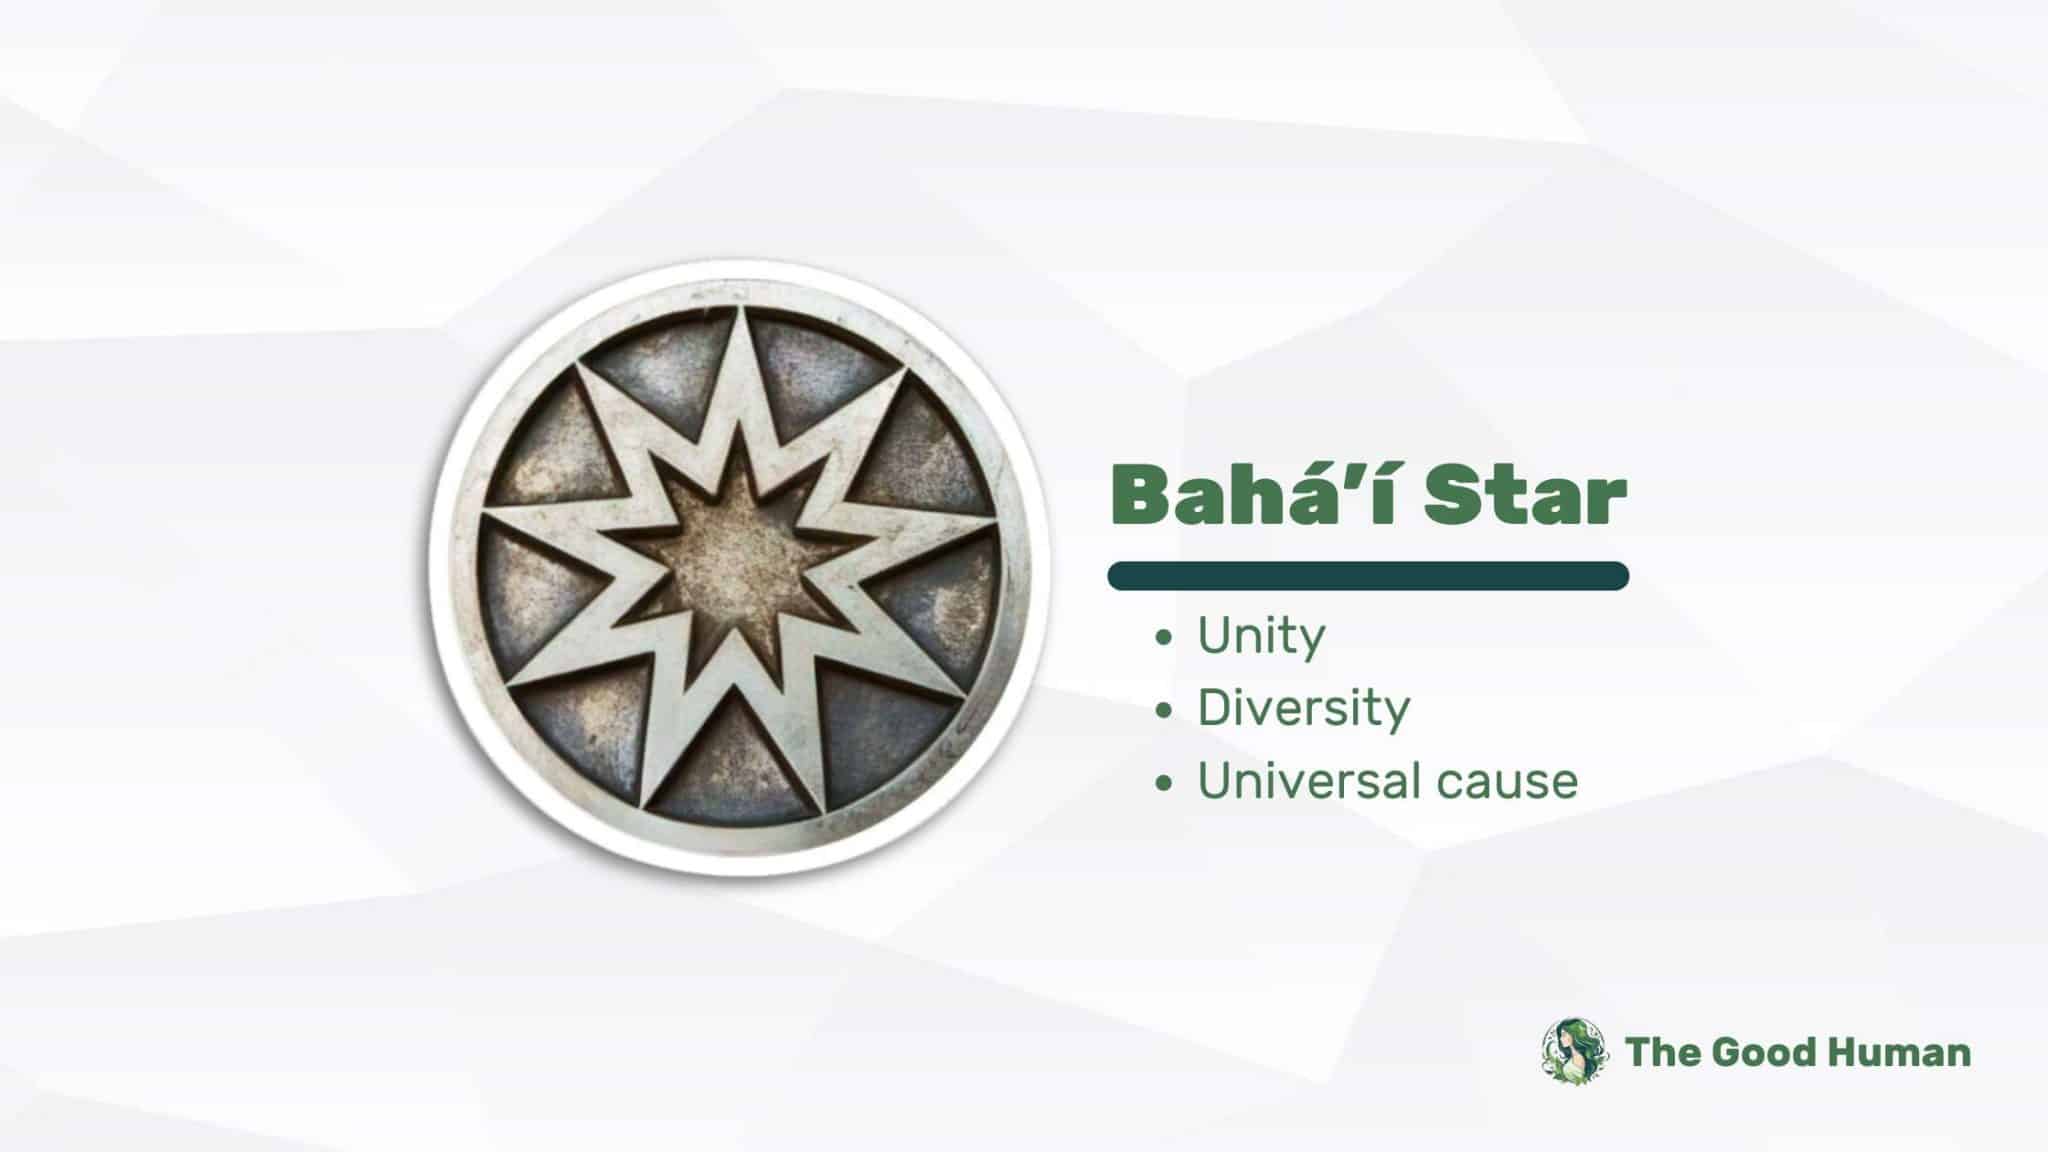 Bahai Star symbol